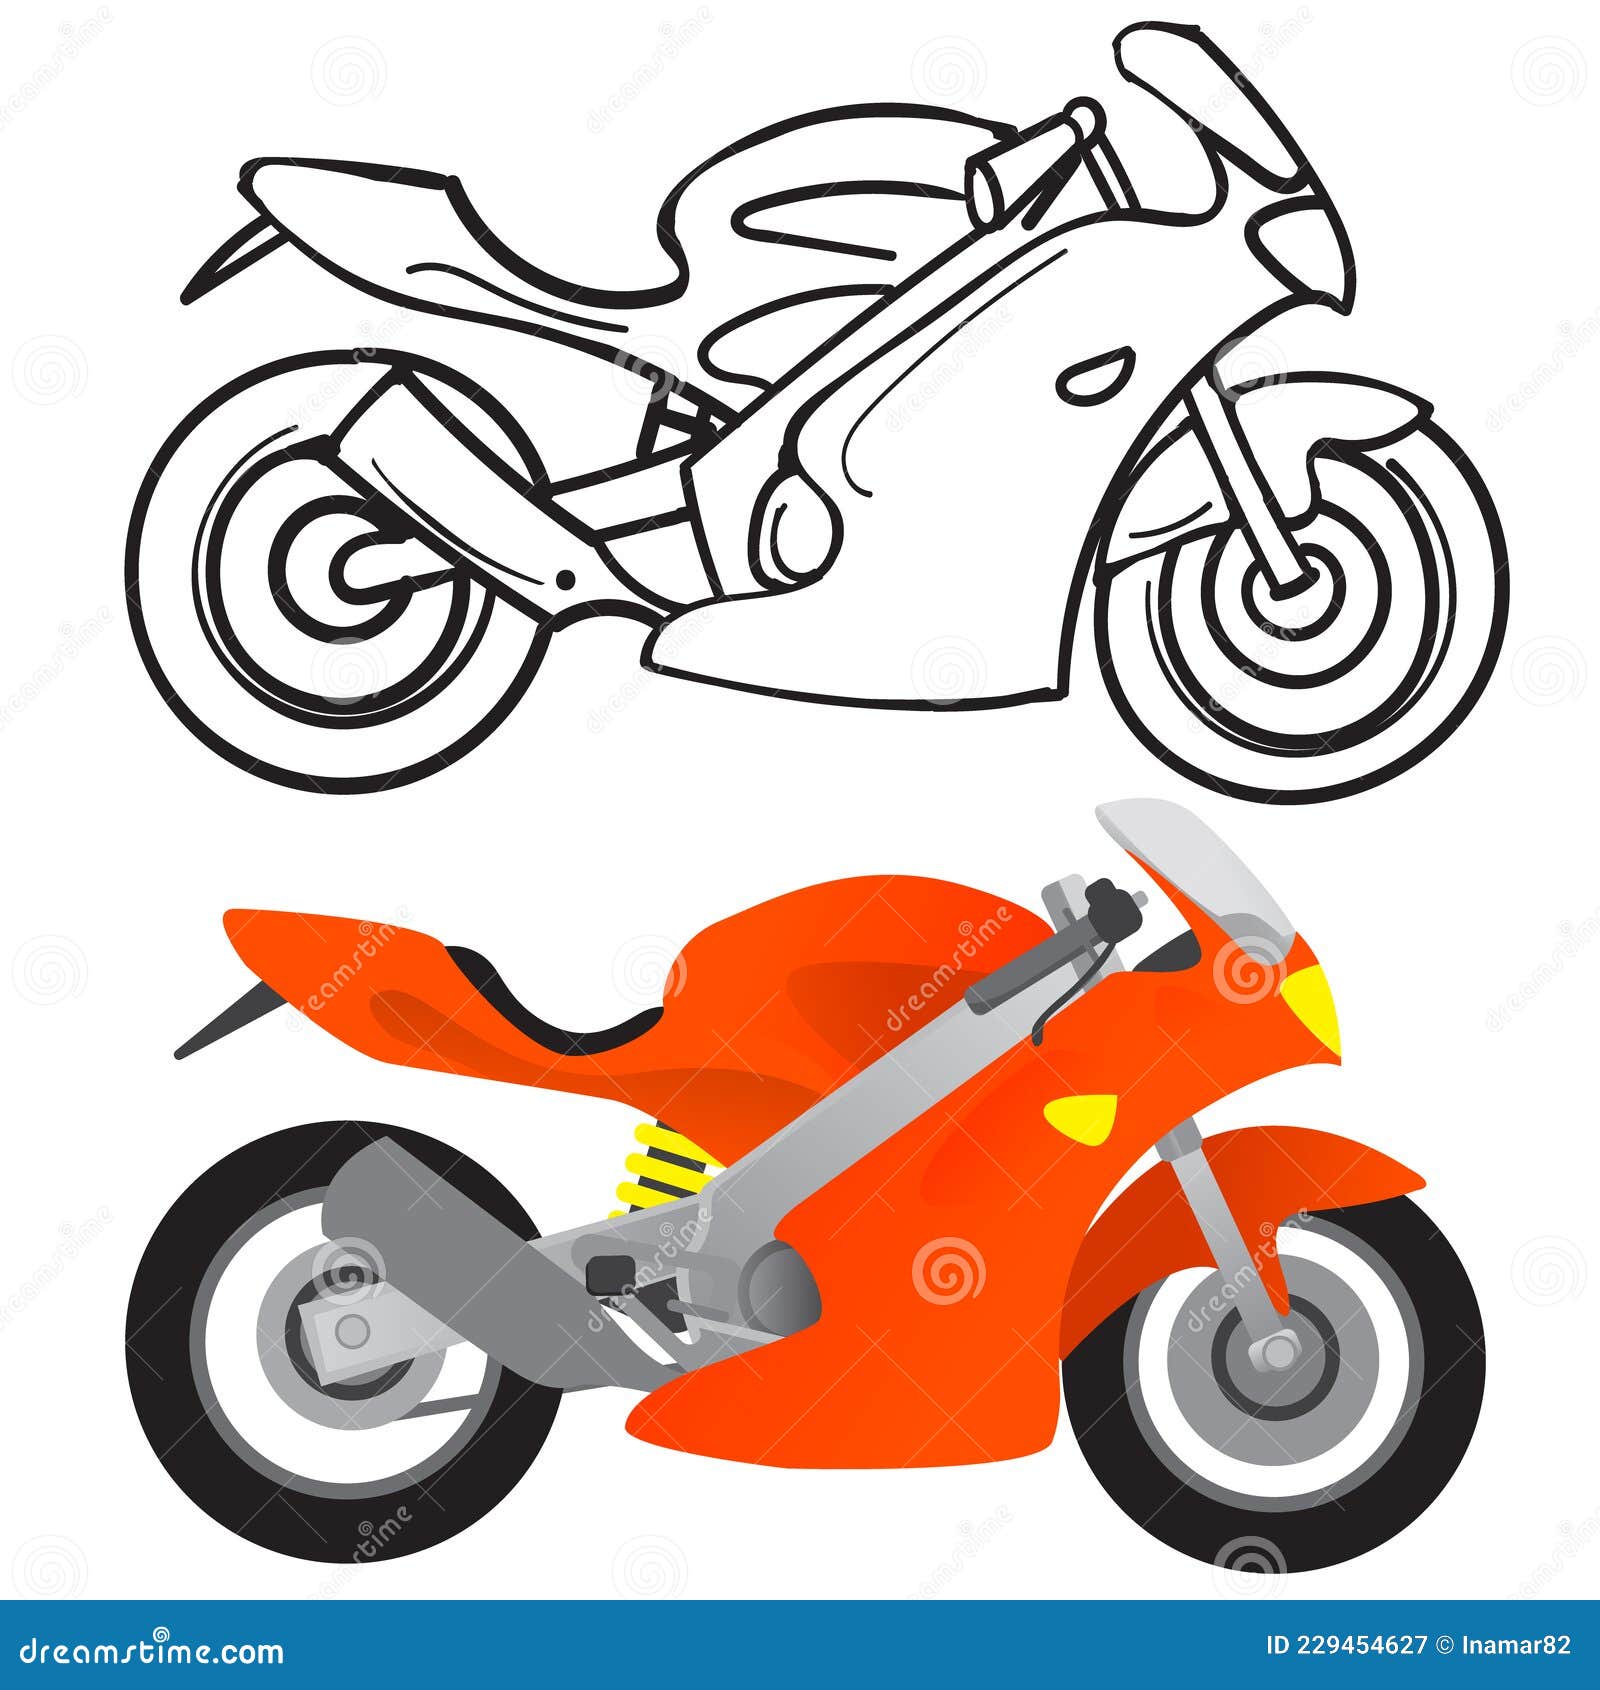 desenho de moto colorida